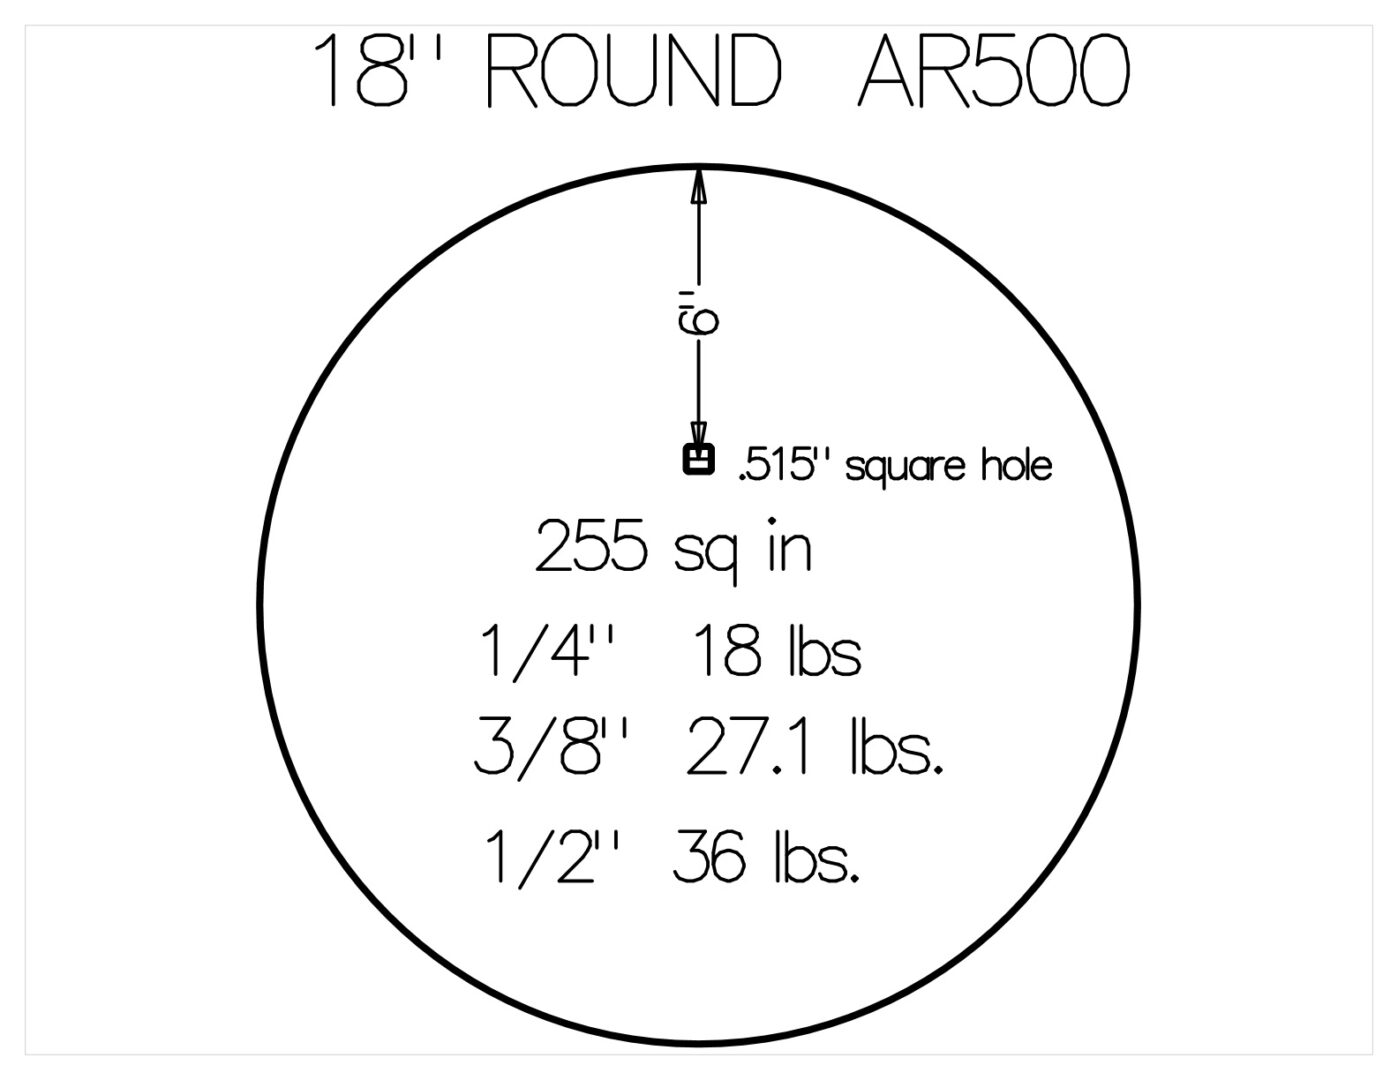 18 inch round AR500 statistics